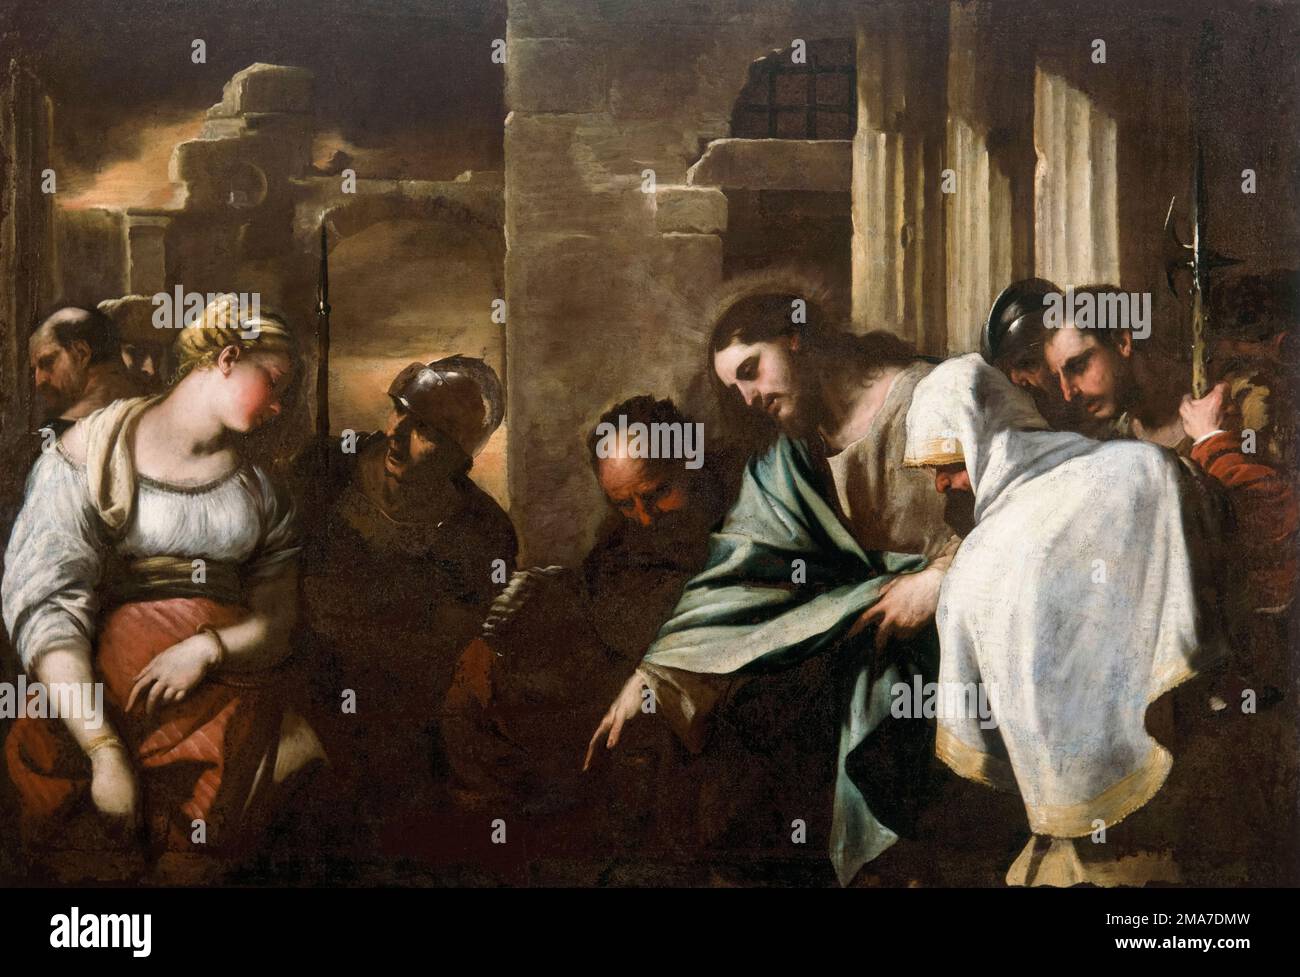 Luca Giordano y taller, Cristo y la adúltera, pintura al óleo sobre lienzo, 1658-1659 Foto de stock